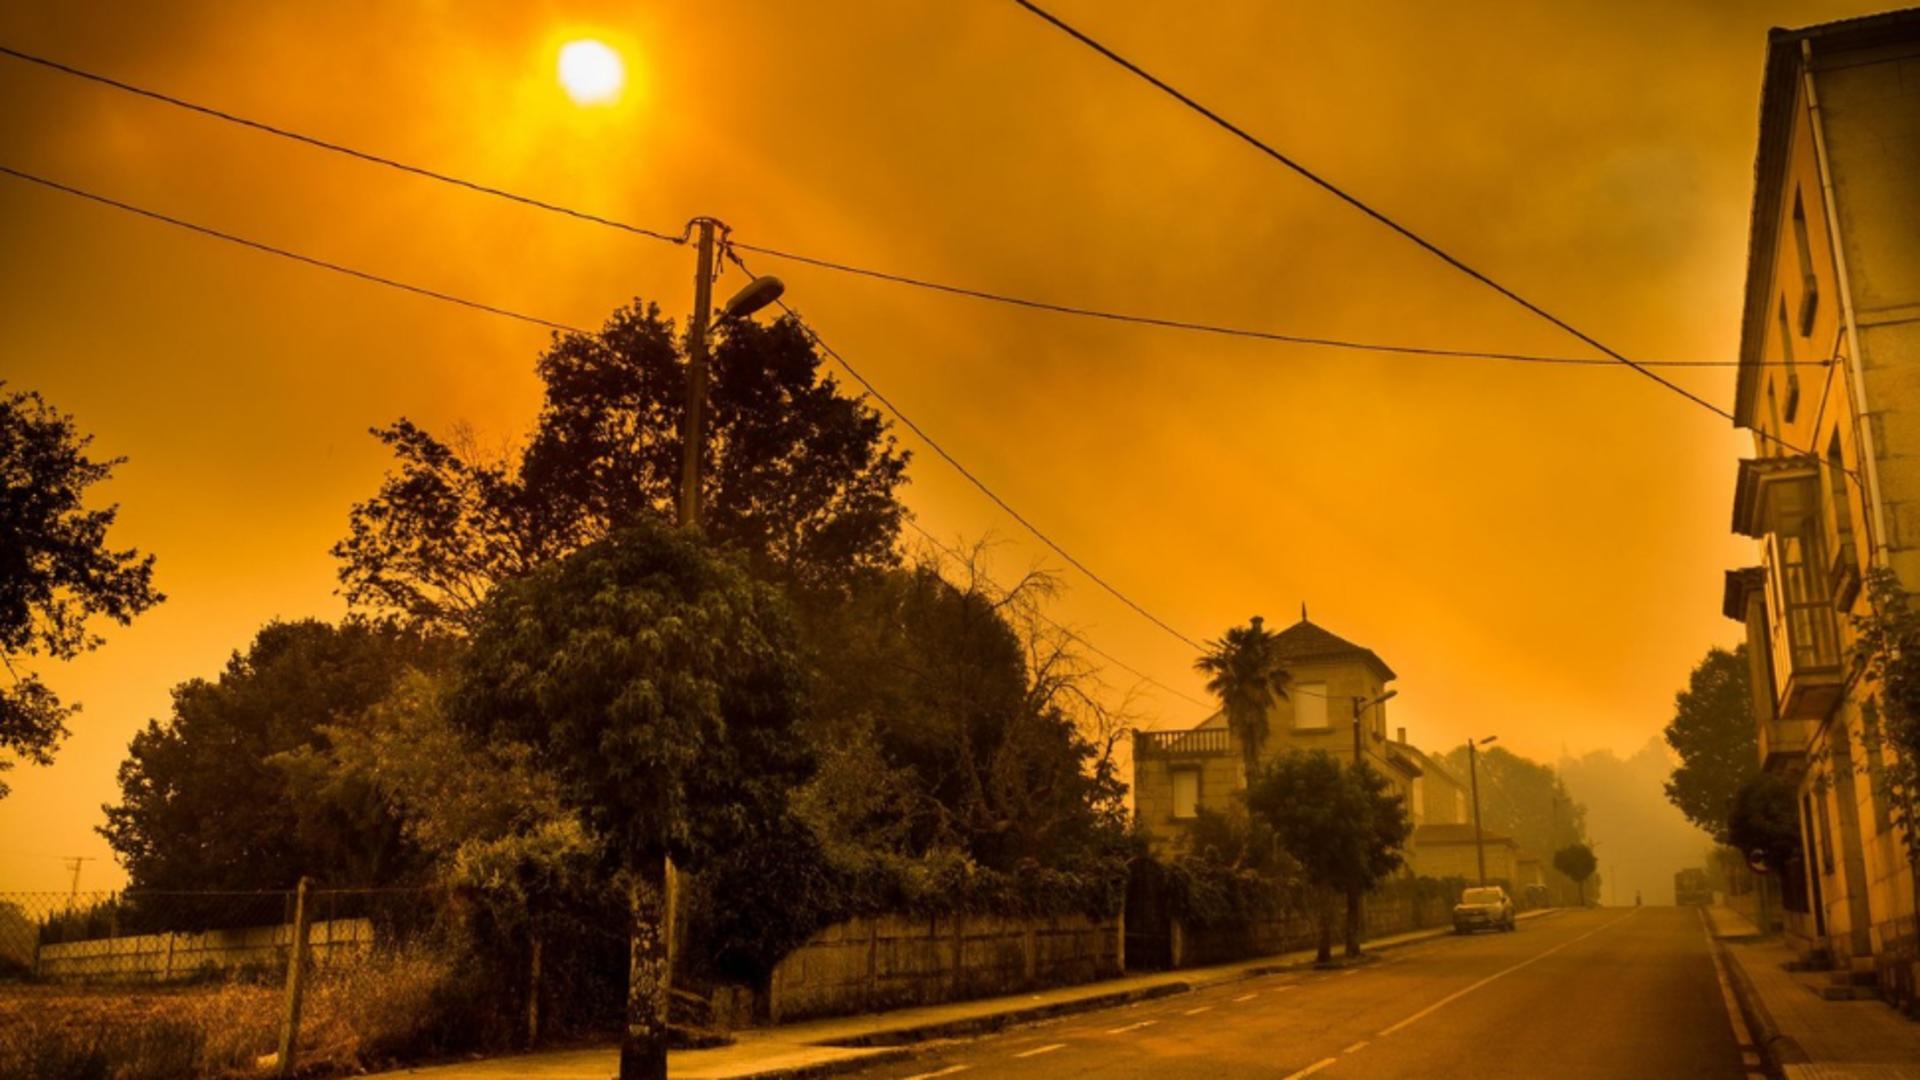 Soarele acoperit de fumul incendiilor din Spania (Profimedia)